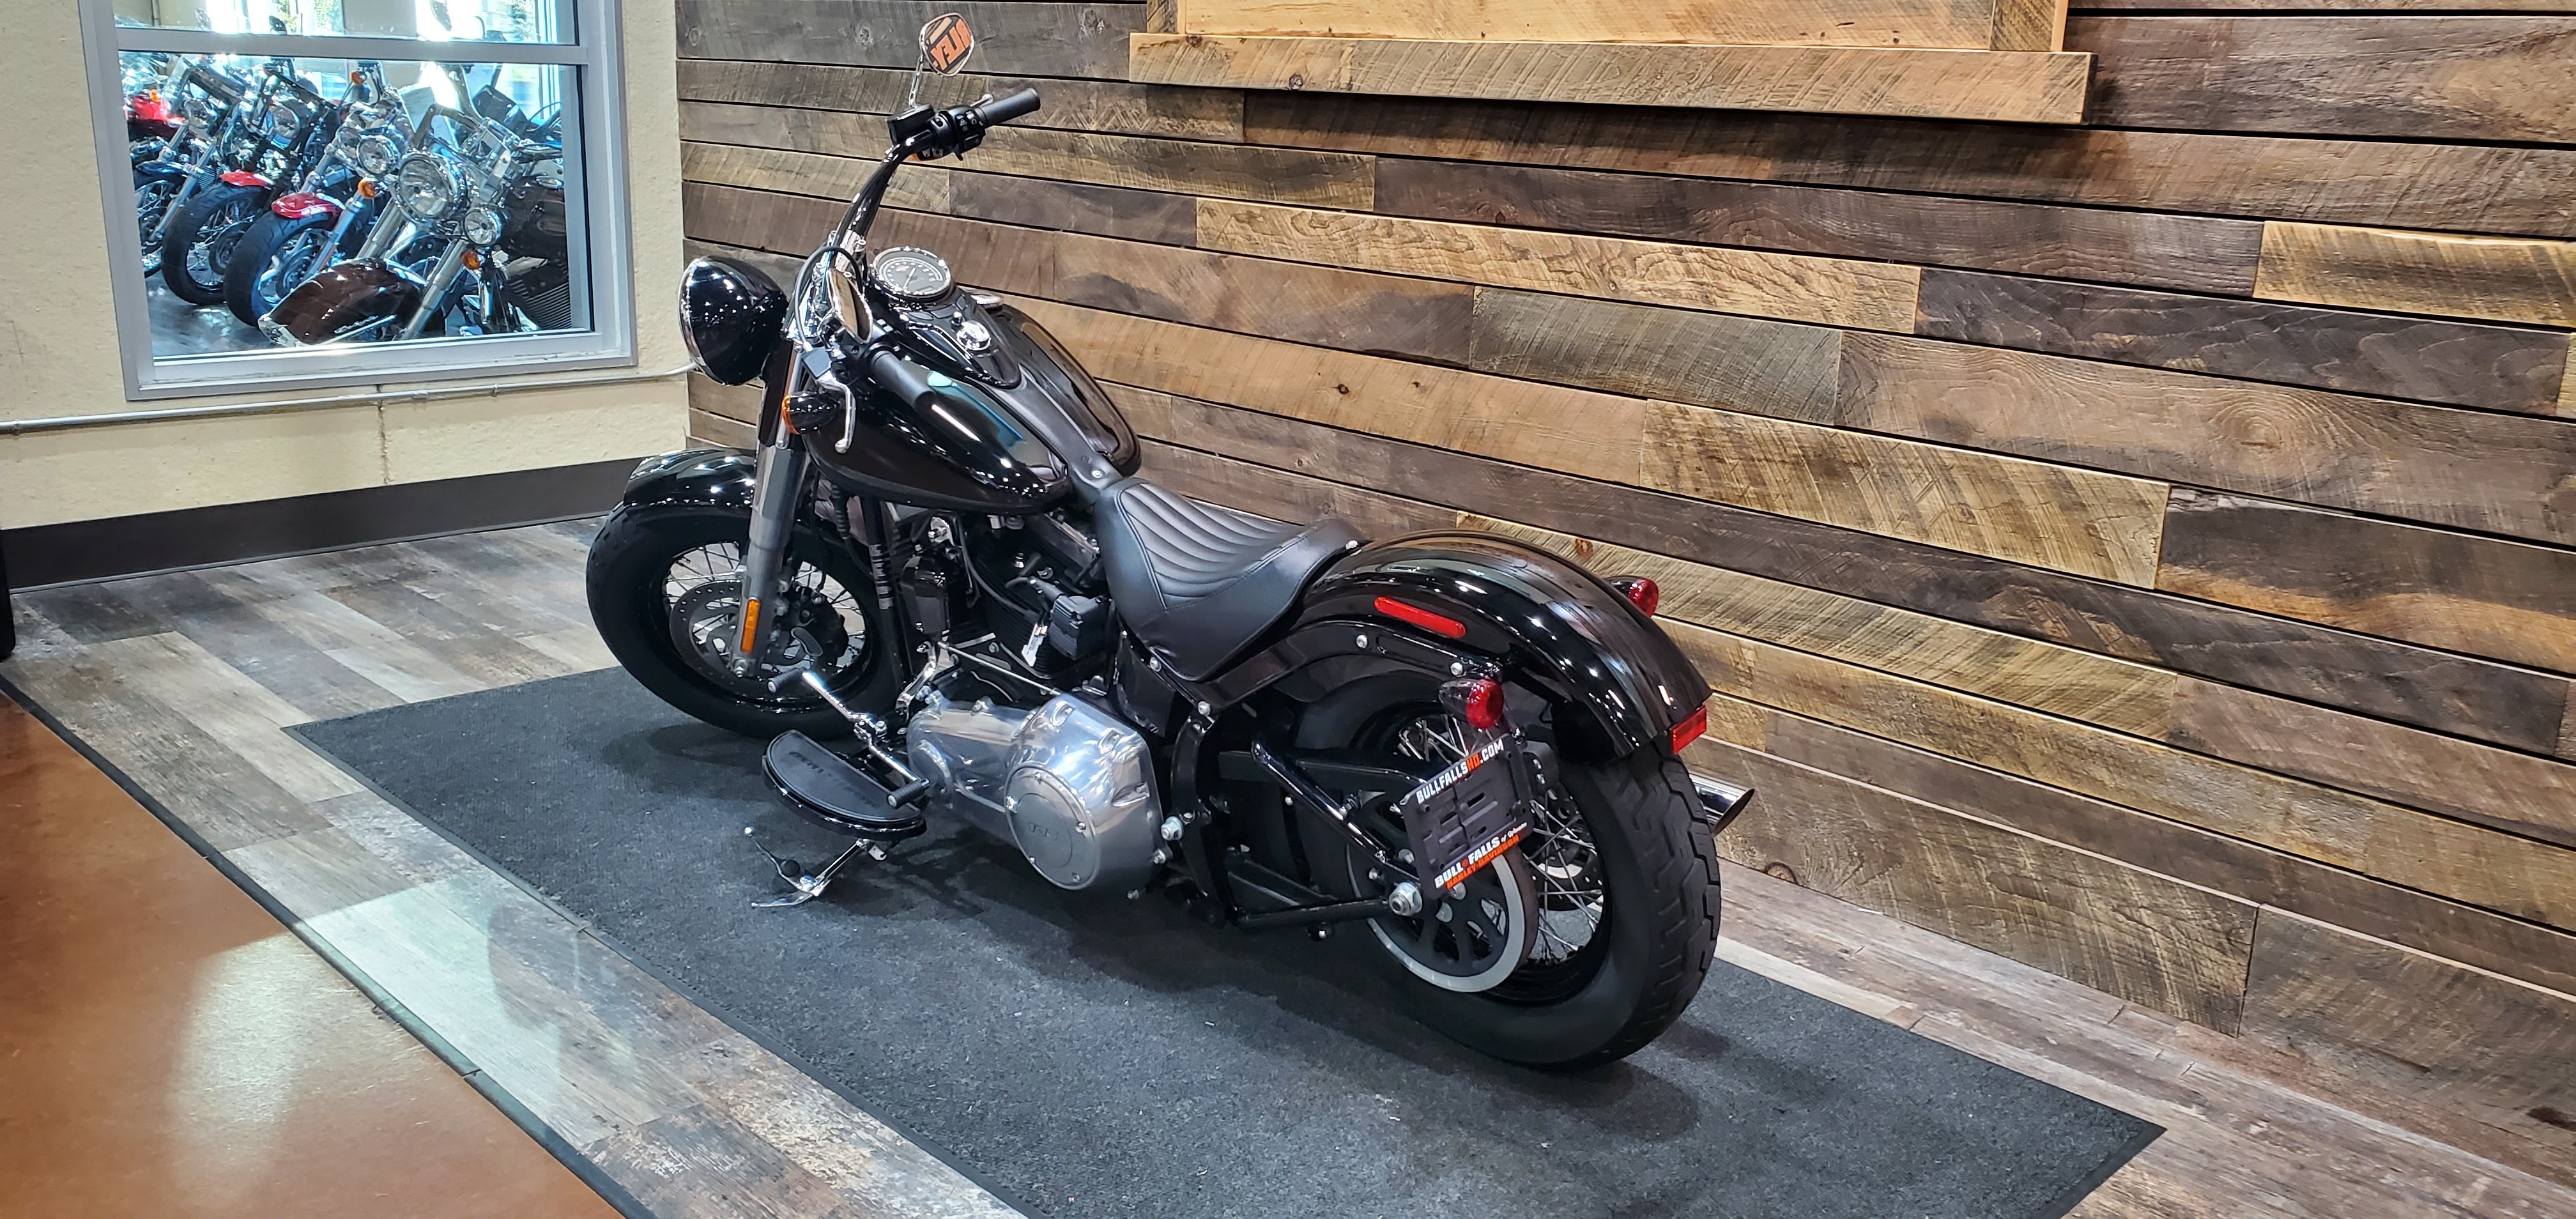 2016 Harley-Davidson Softail Slim at Bull Falls Harley-Davidson